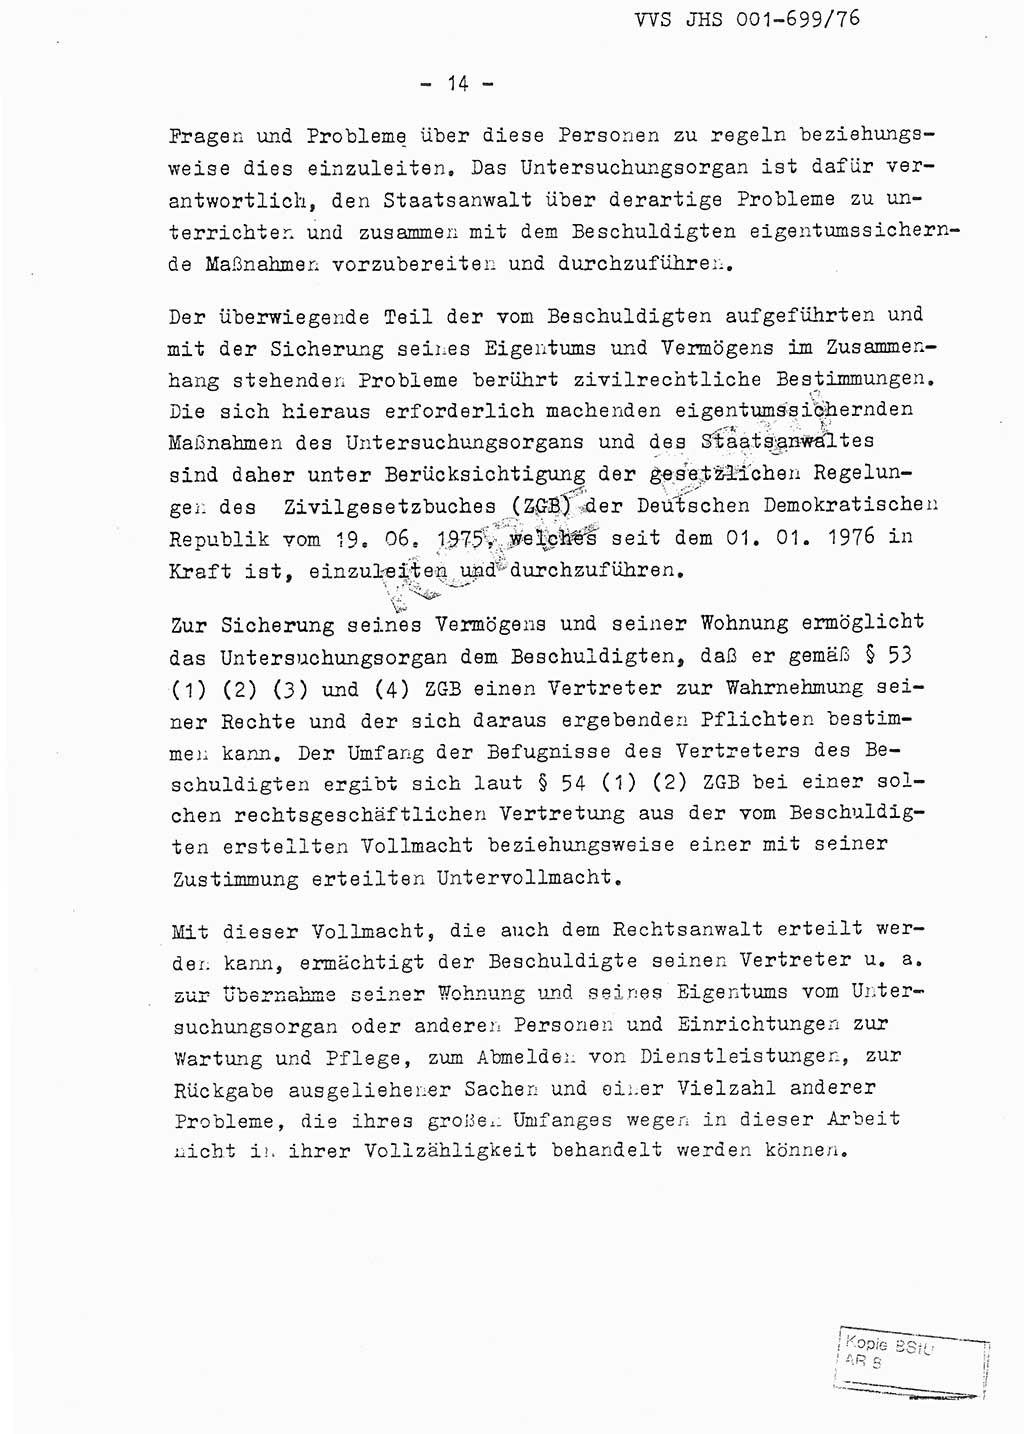 Fachschulabschlußarbeit Leutnant Volkmar Taubert (HA Ⅸ/9), Leutnant Axel Naumann (HA Ⅸ/9), Unterleutnat Detlef Debski (HA Ⅸ/9), Ministerium für Staatssicherheit (MfS) [Deutsche Demokratische Republik (DDR)], Juristische Hochschule (JHS), Vertrauliche Verschlußsache (VVS) 001-699/76, Potsdam 1976, Seite 14 (FS-Abschl.-Arb. MfS DDR JHS VVS 001-699/76 1976, S. 14)